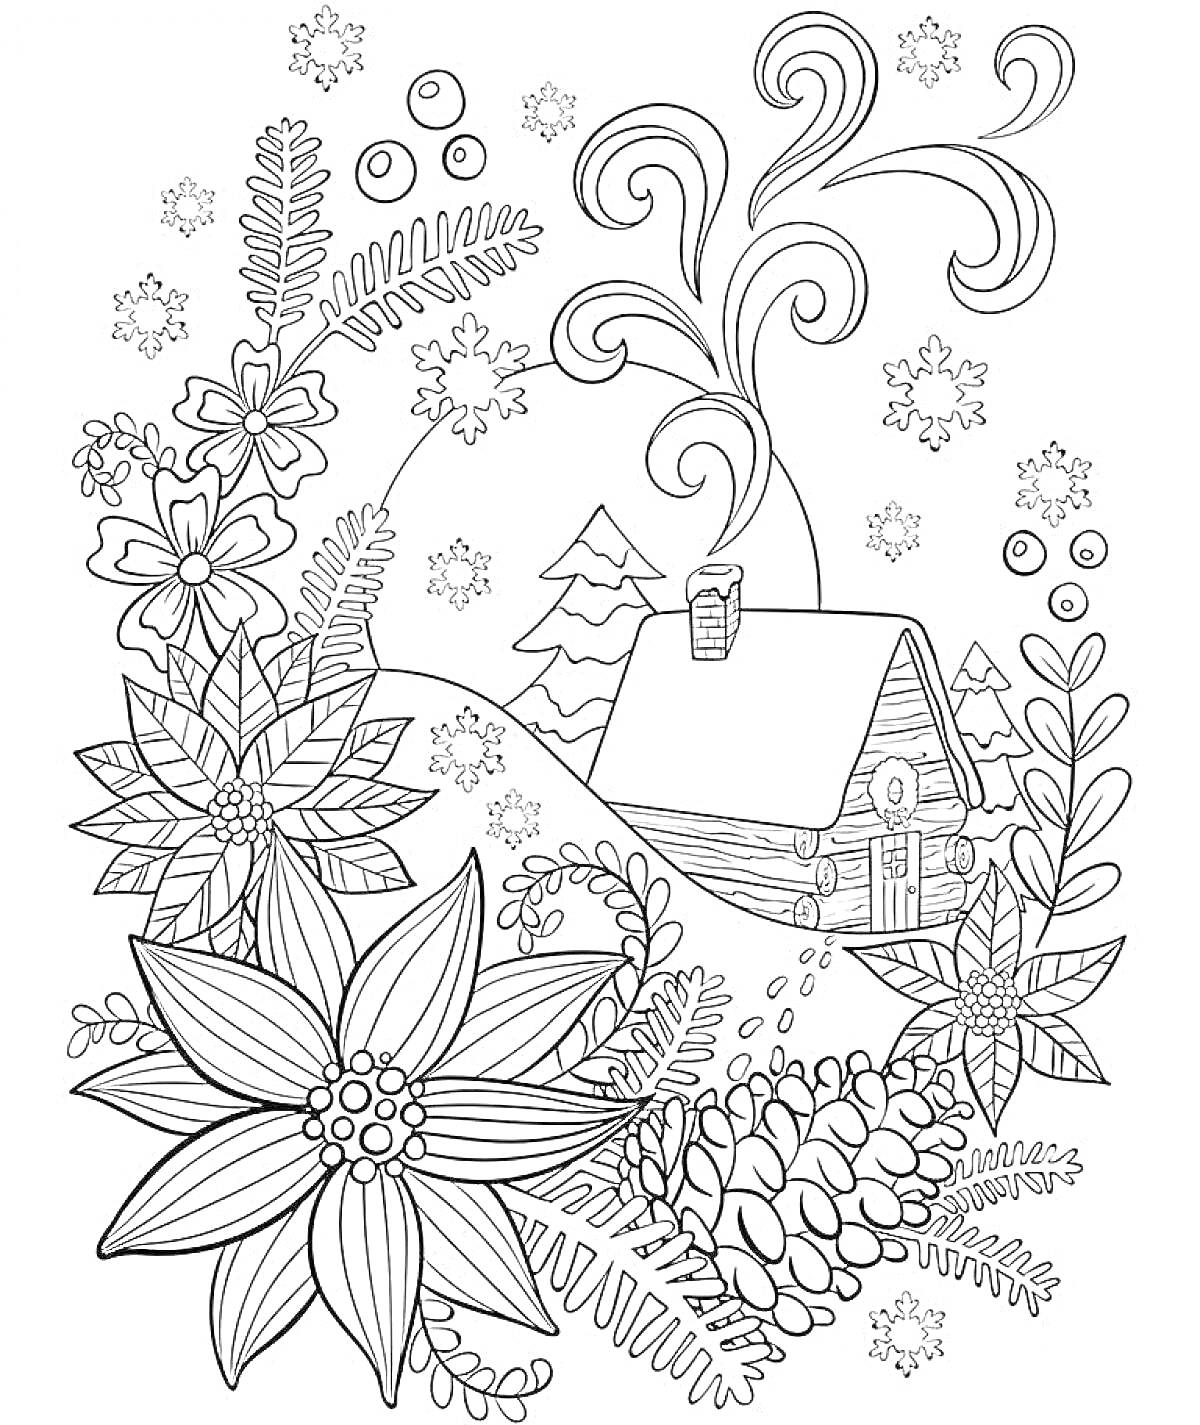 Домик в снегу с цветами и елками